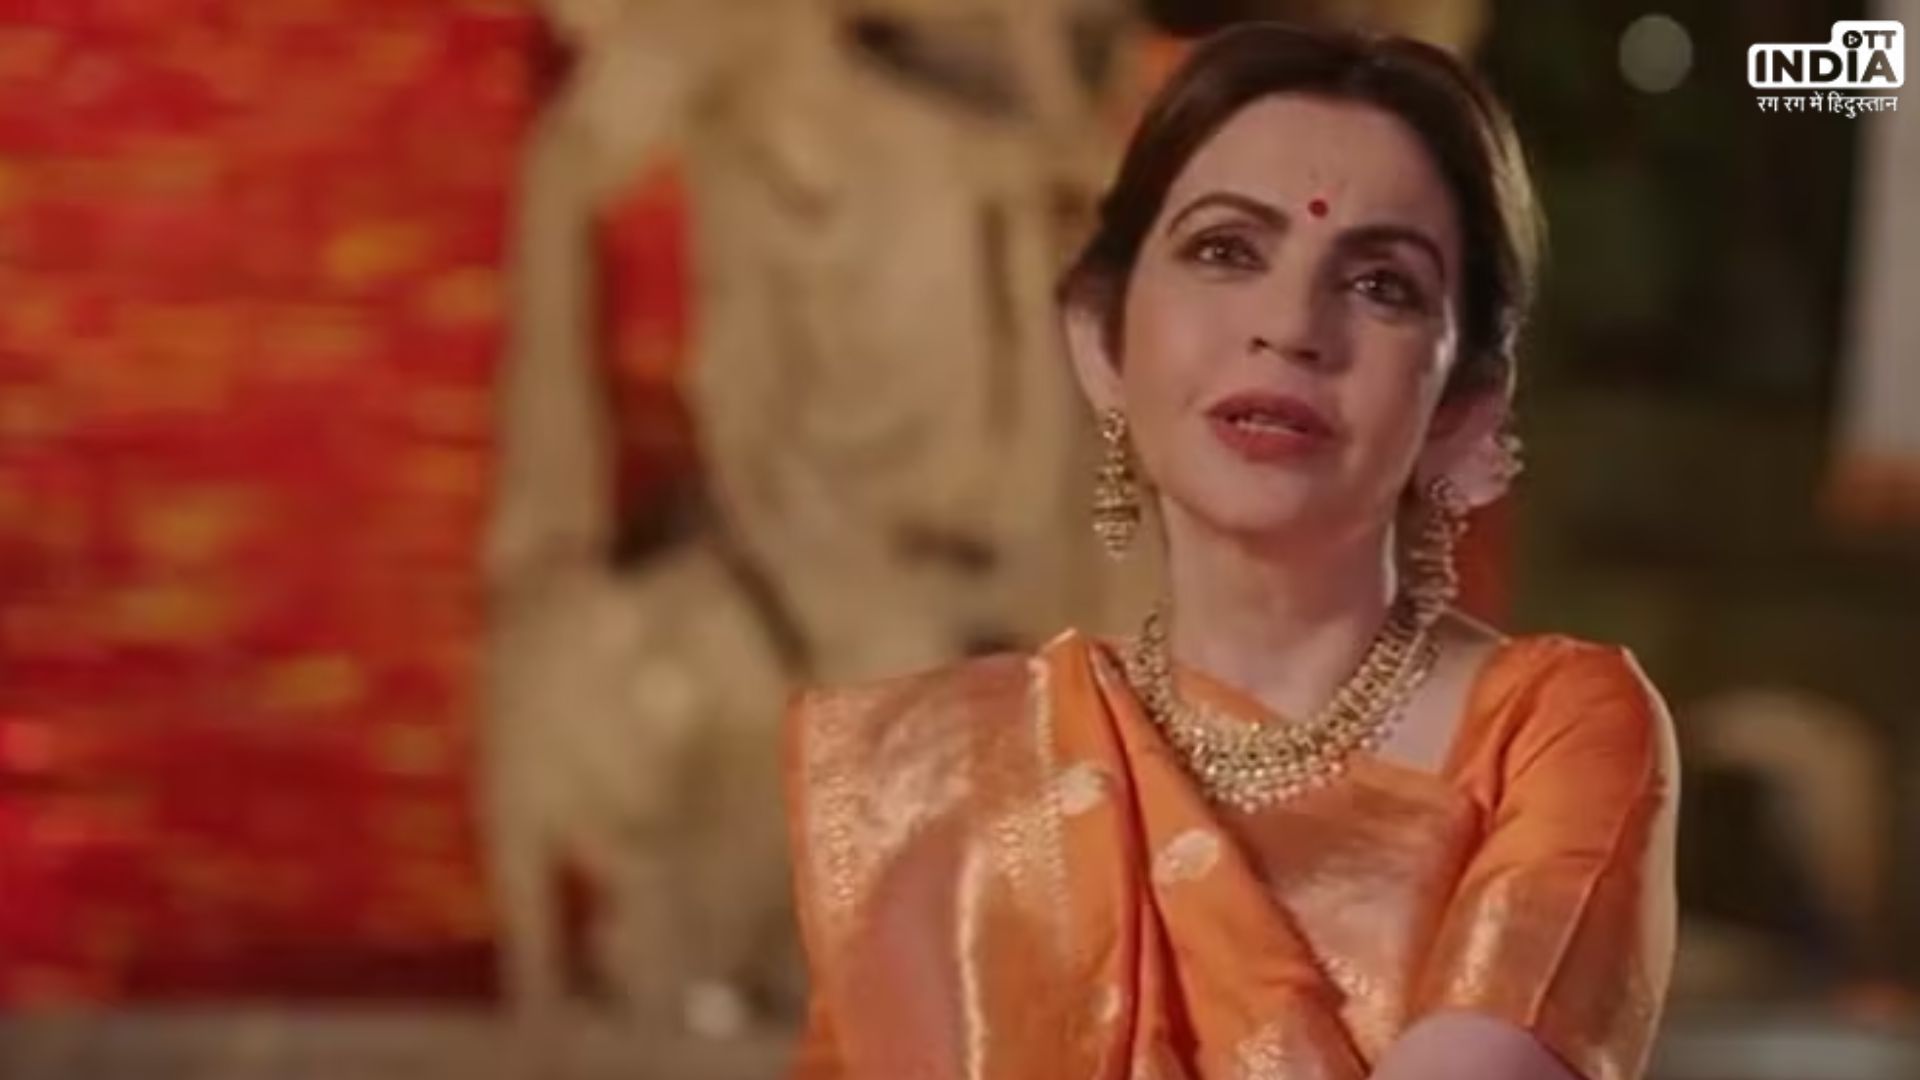 Anant-Radhika Pre Wedding Nita Ambani Video: अनंत और राधिका की शादी से पहले नीता अंबानी ने बताया कि जामनगर में क्यों हो रही है शादी